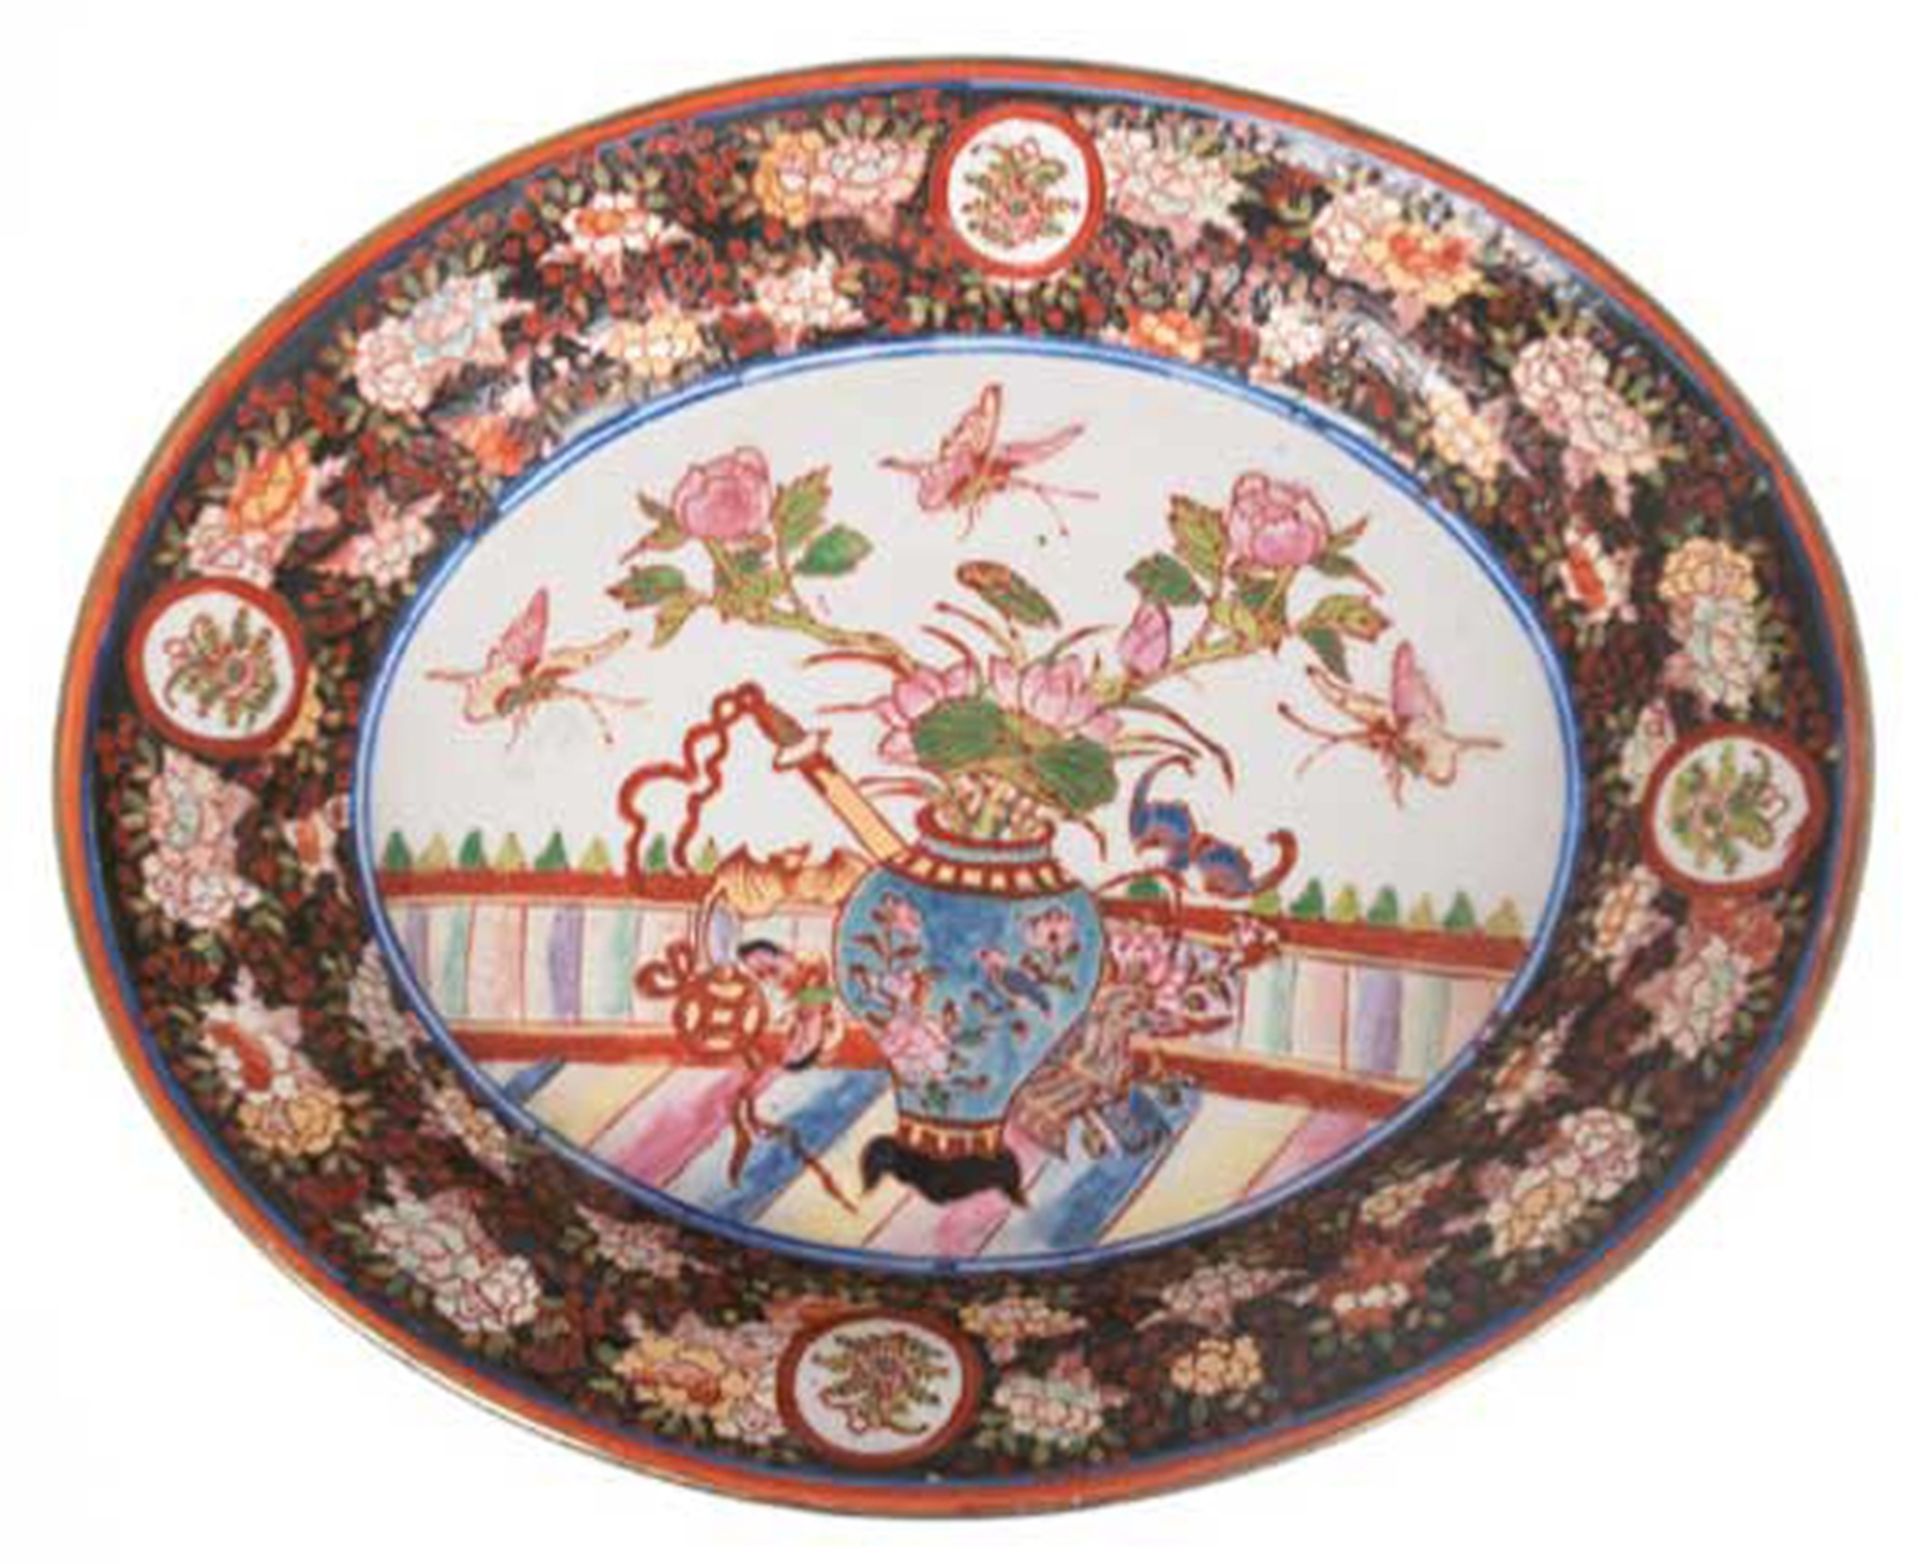 Porzellanplatte, China, oval, Fahne mit floralem Dekor, im Spiegel Blumenvase mit Schmetterlingen, 